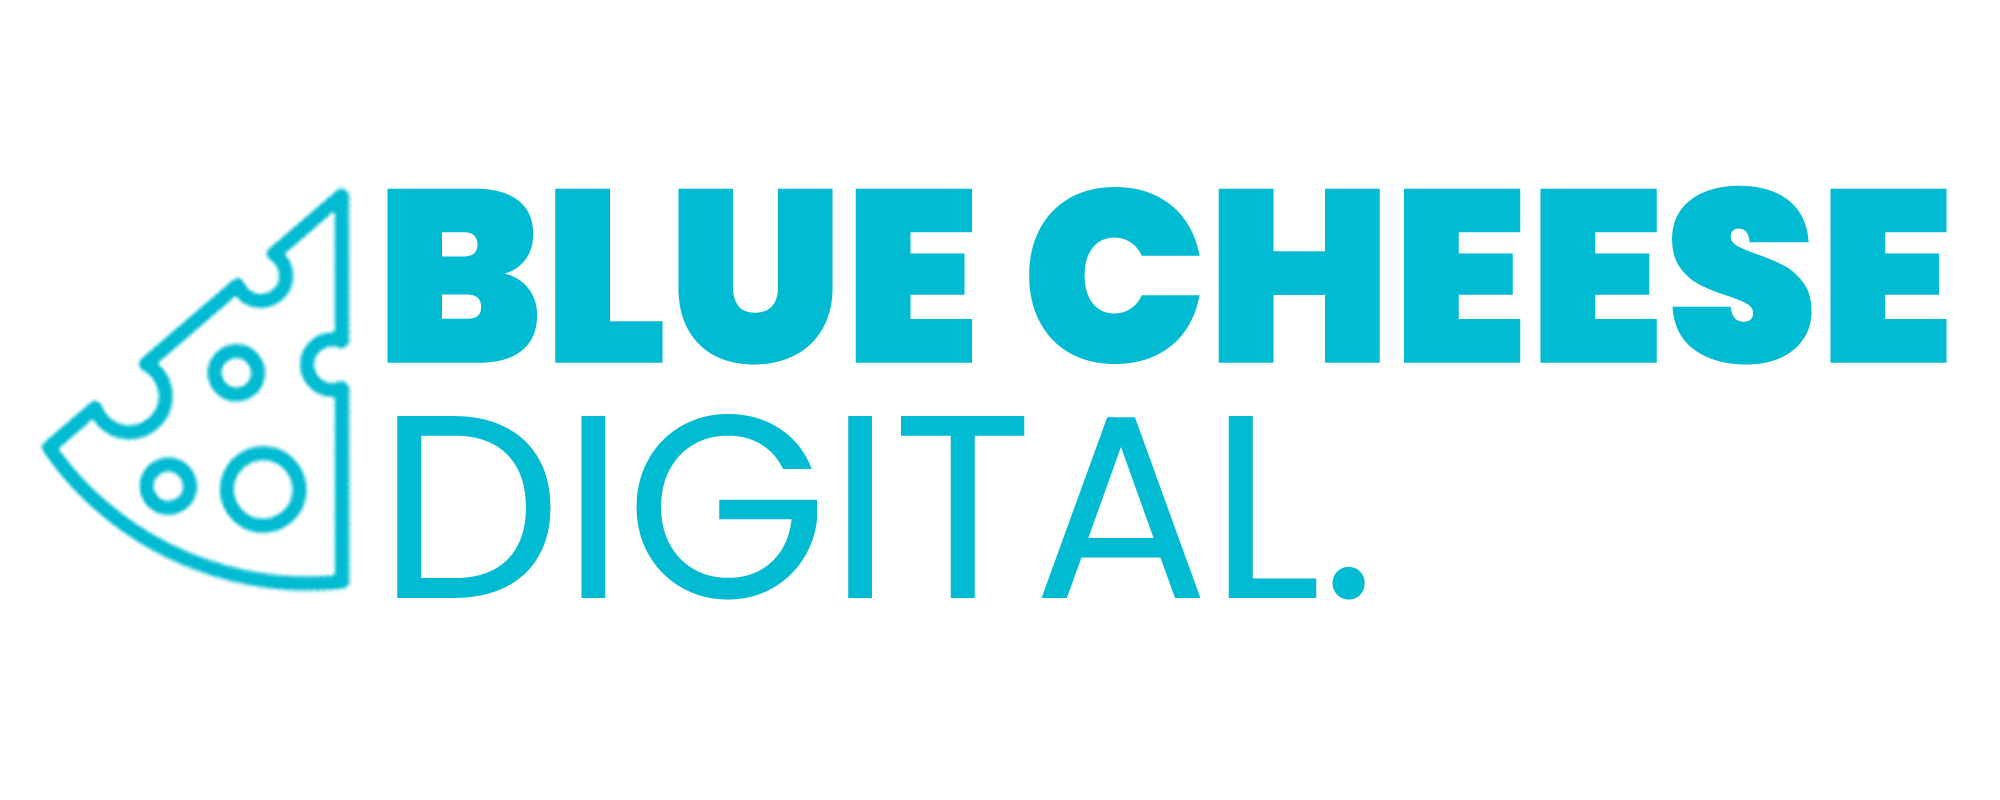 Blue Cheese Digital